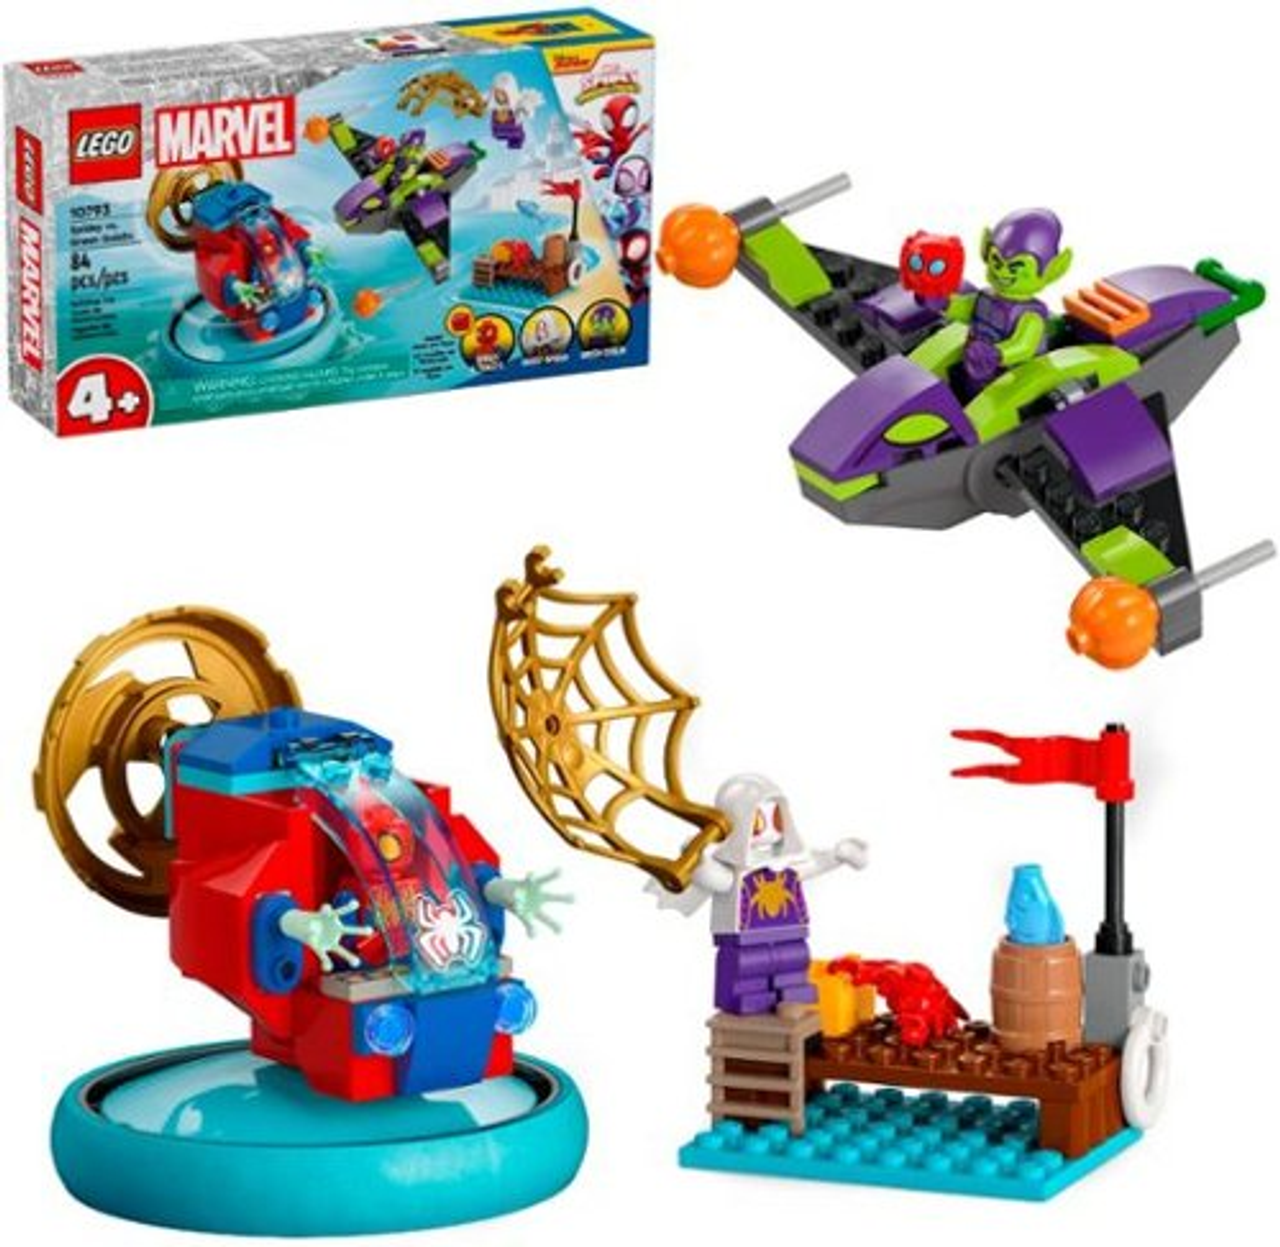 LEGO - Marvel Spidey vs. Green Goblin Super Hero Toy 10793